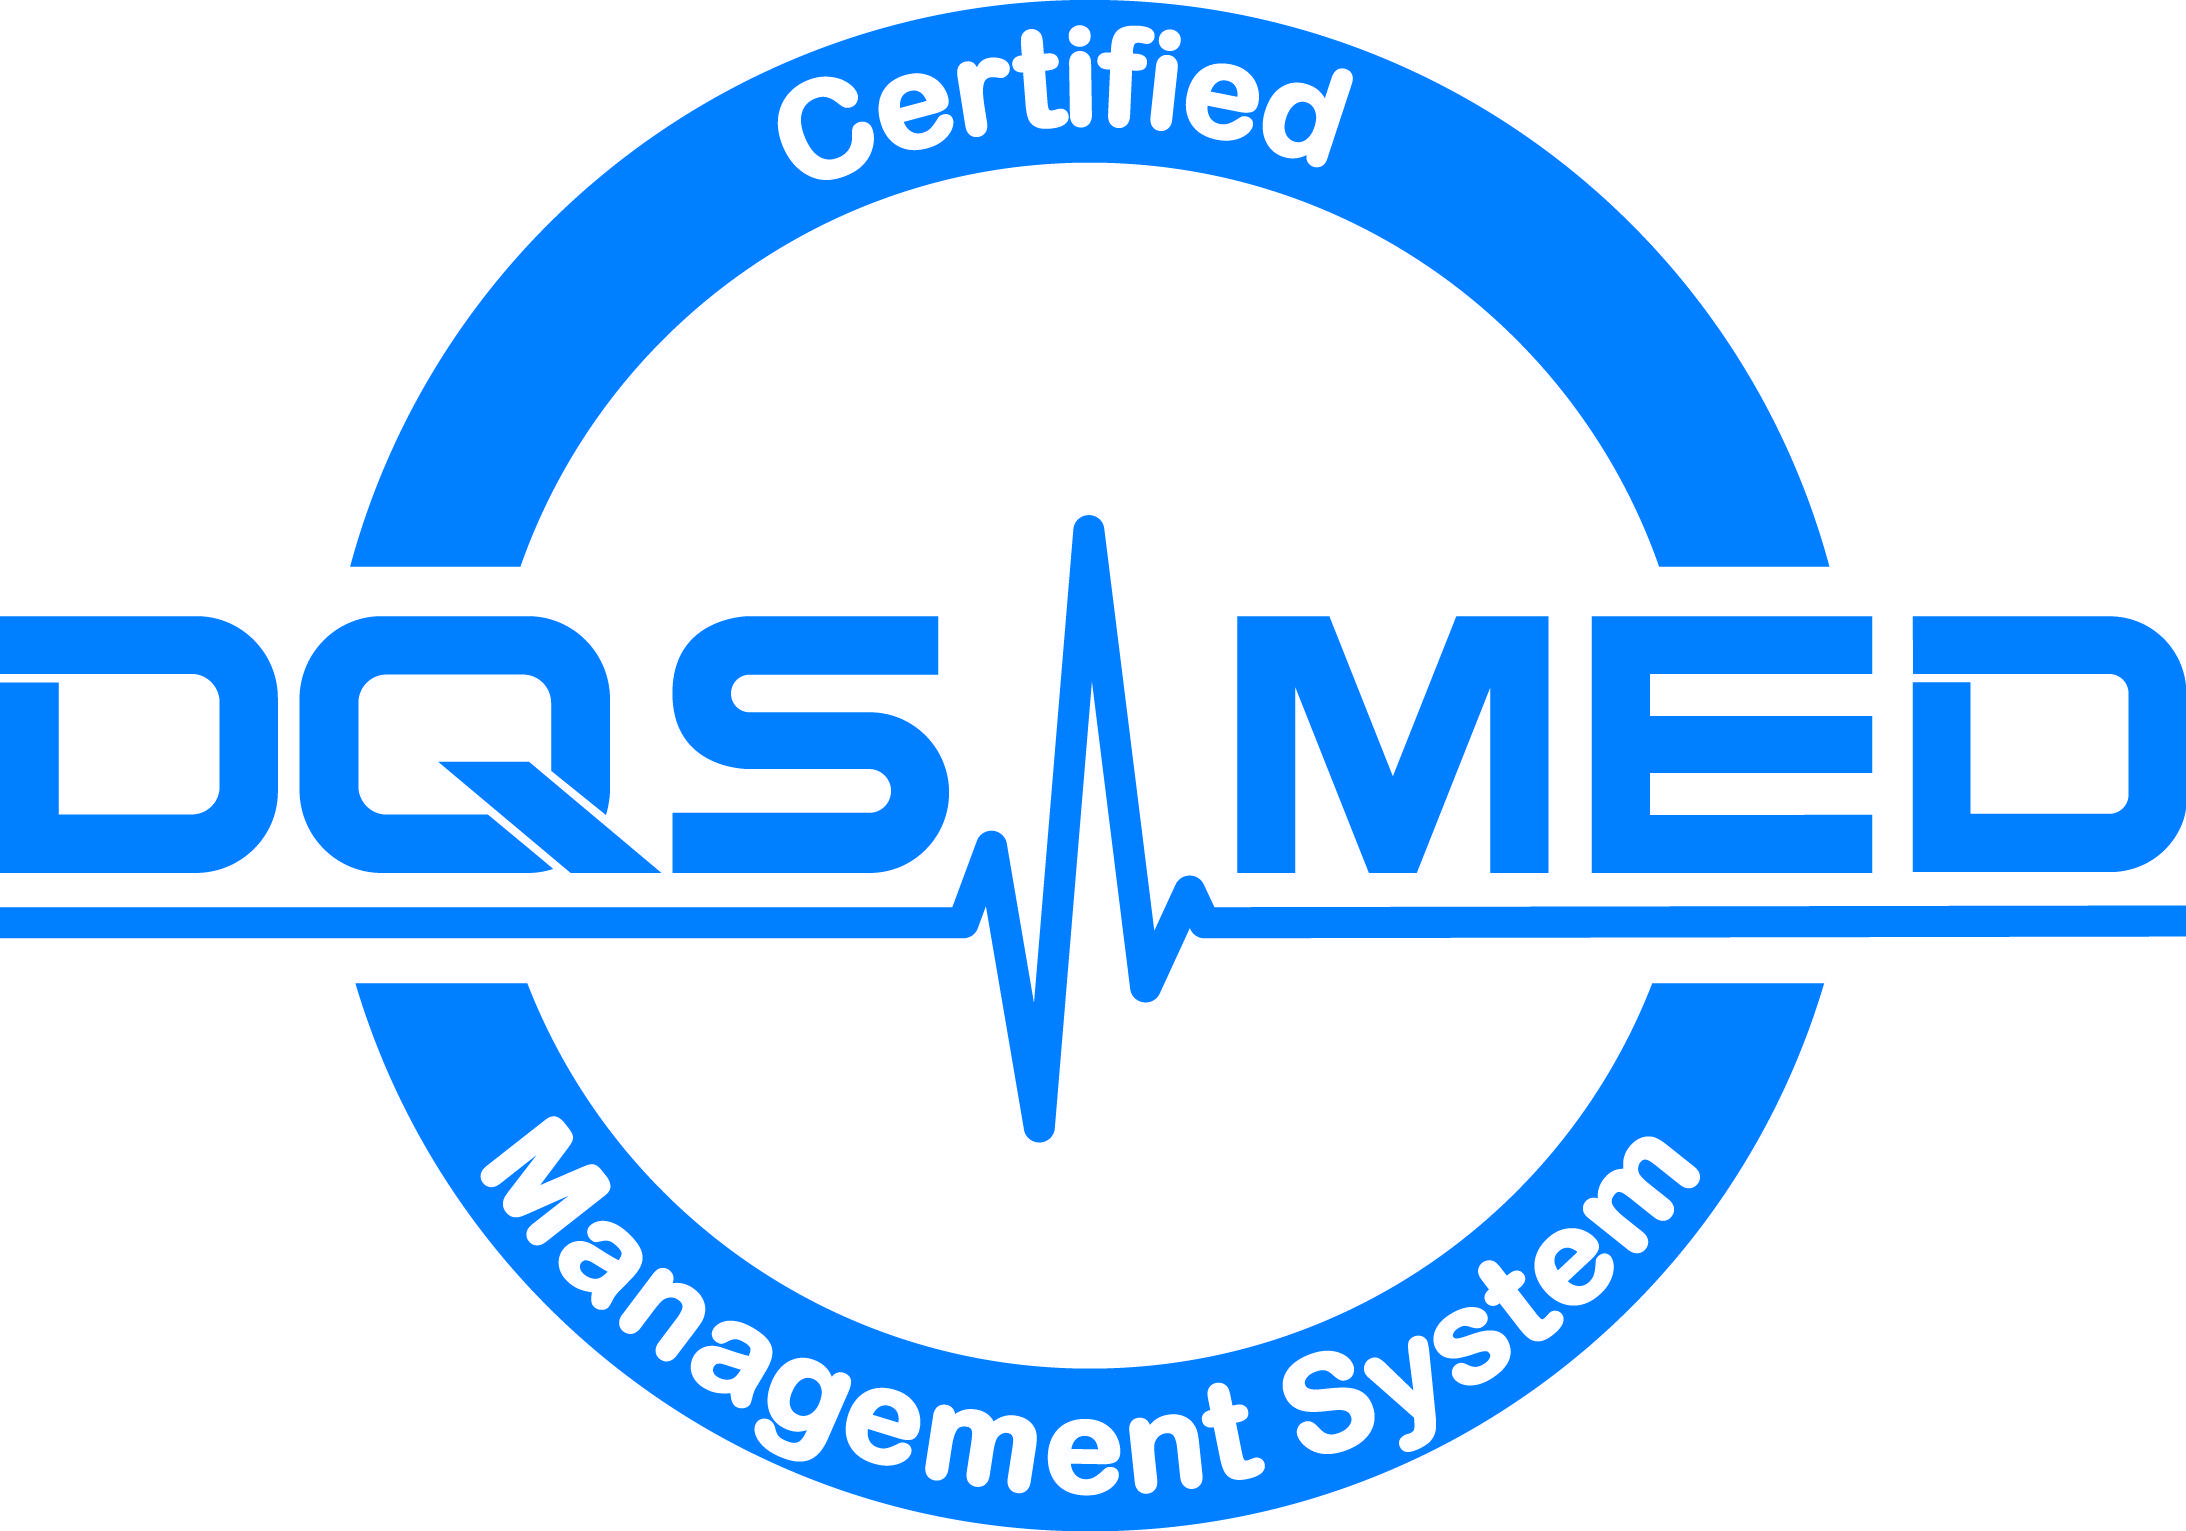 Med Logo - Certification logo/symbols